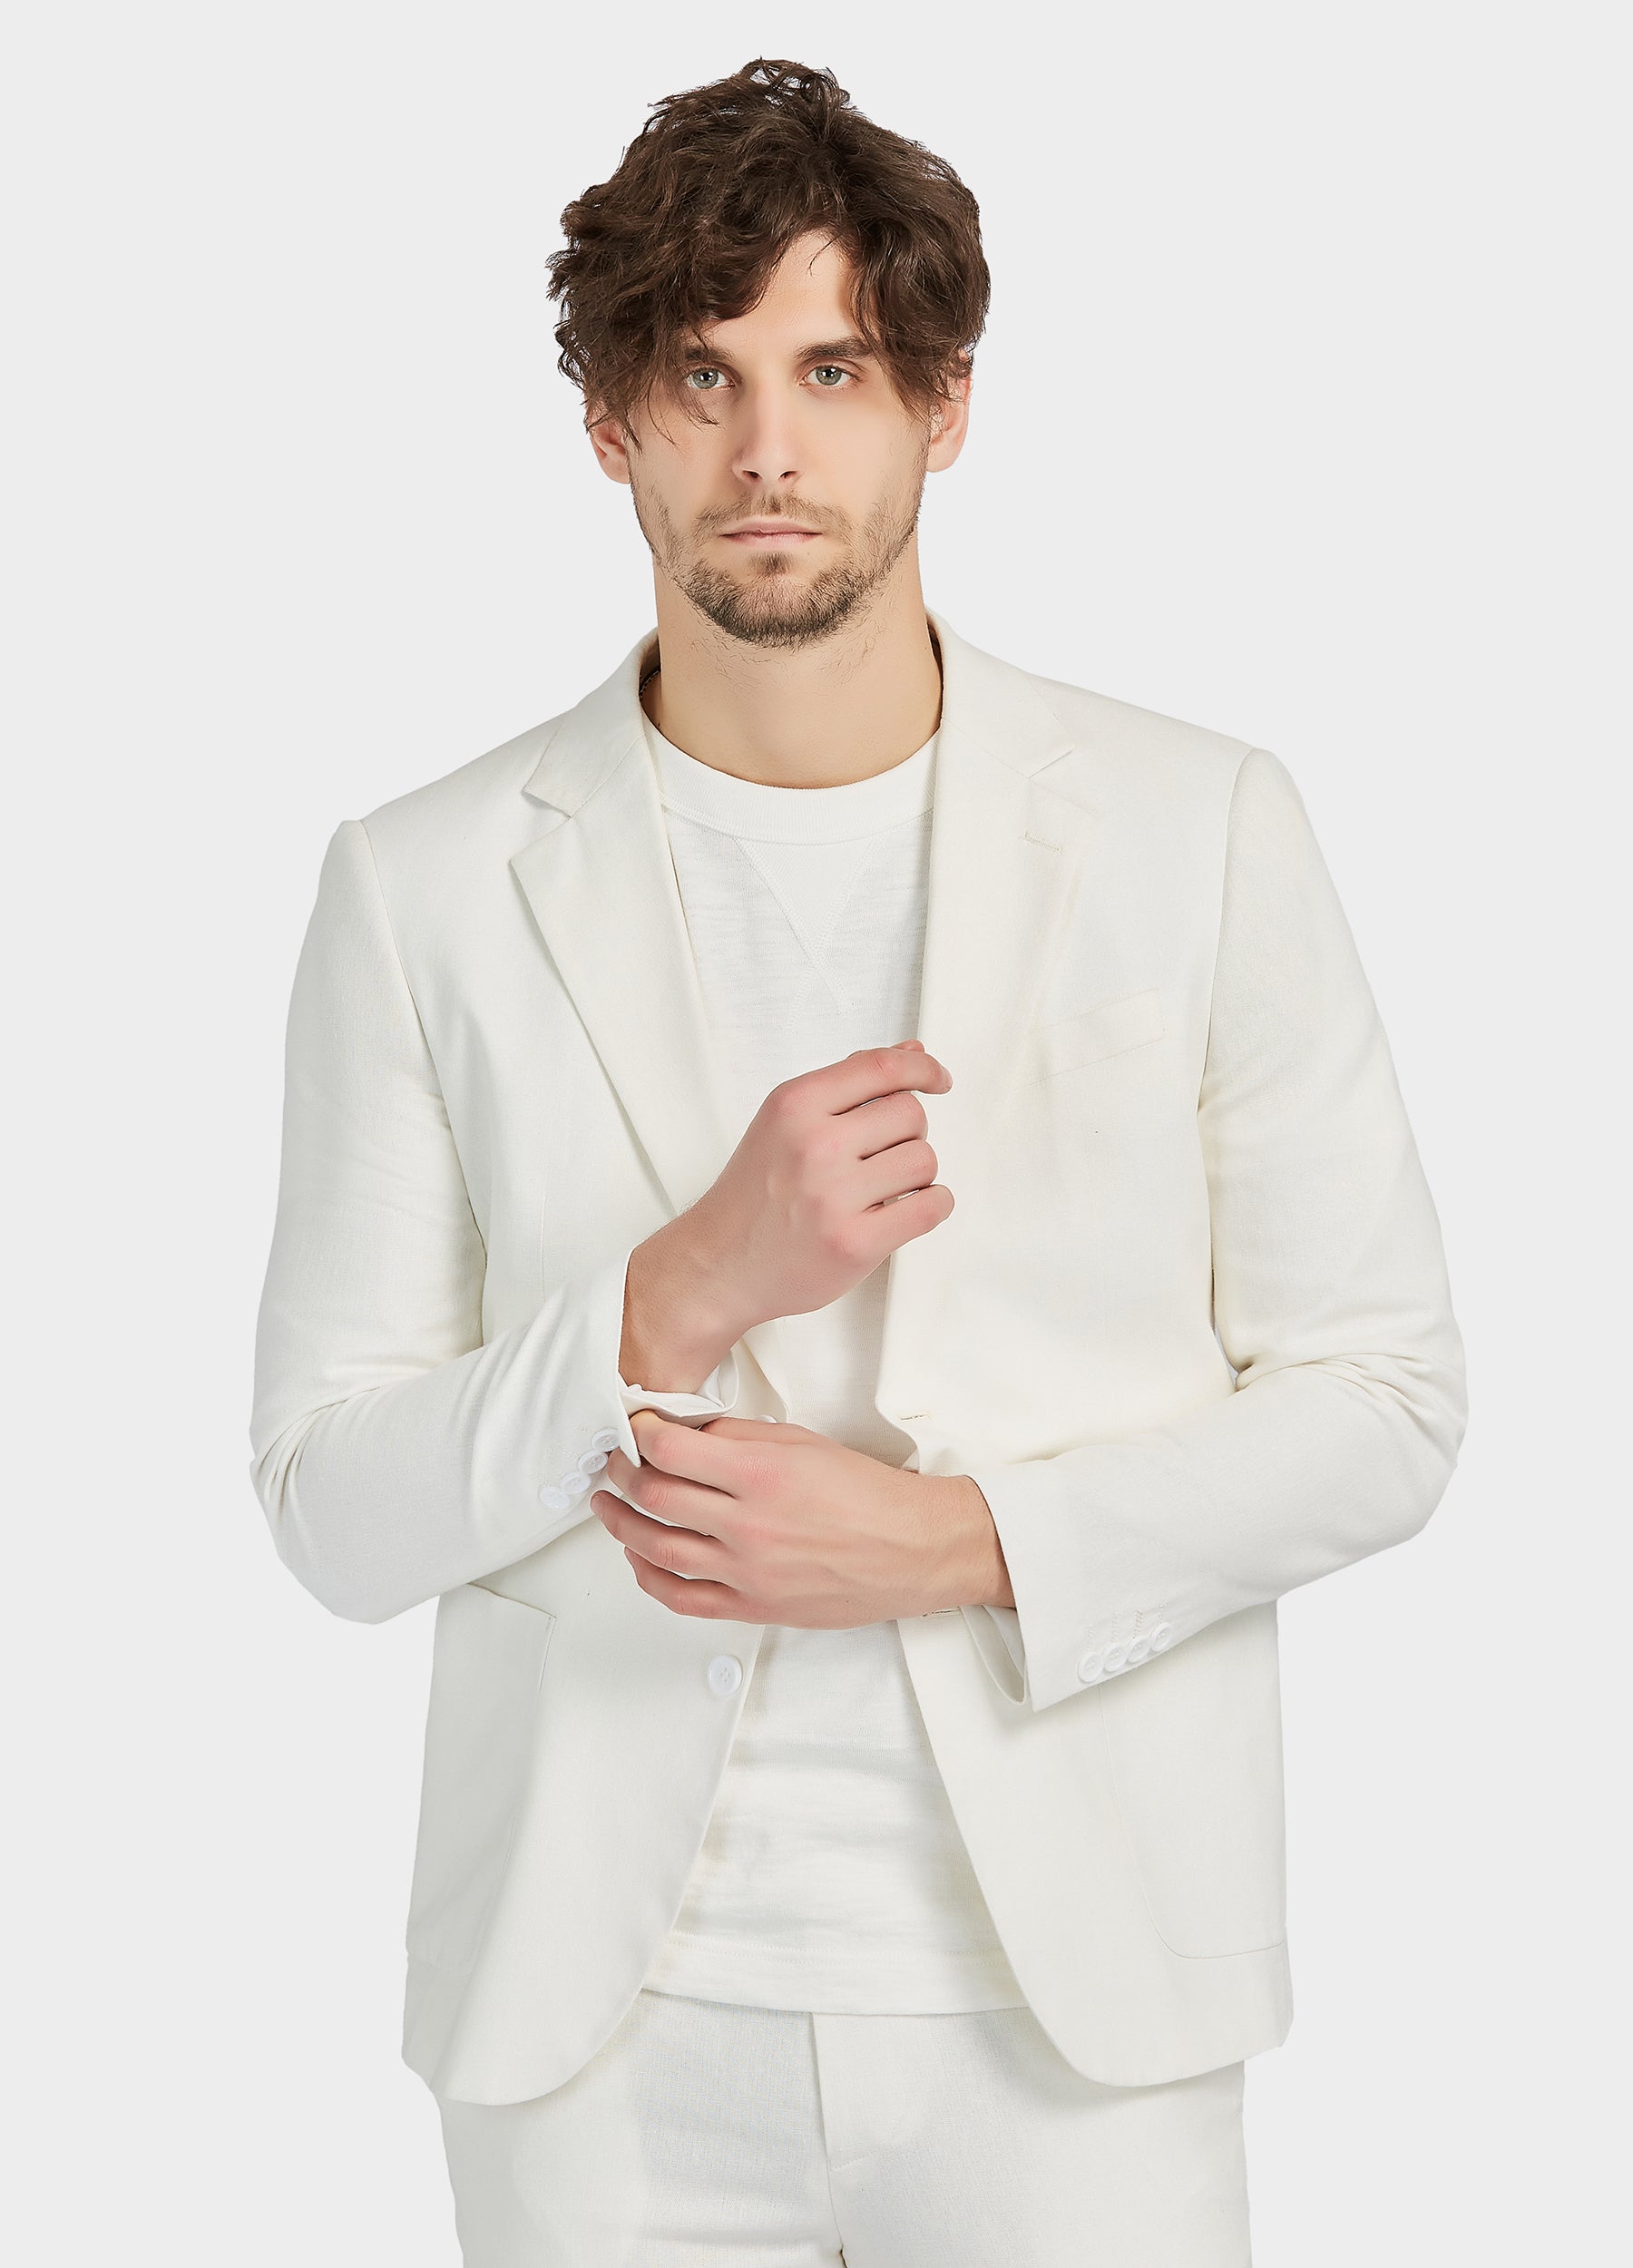 1PA1 Men's Linen Blend Suit Jacket Two Button Business Wedding